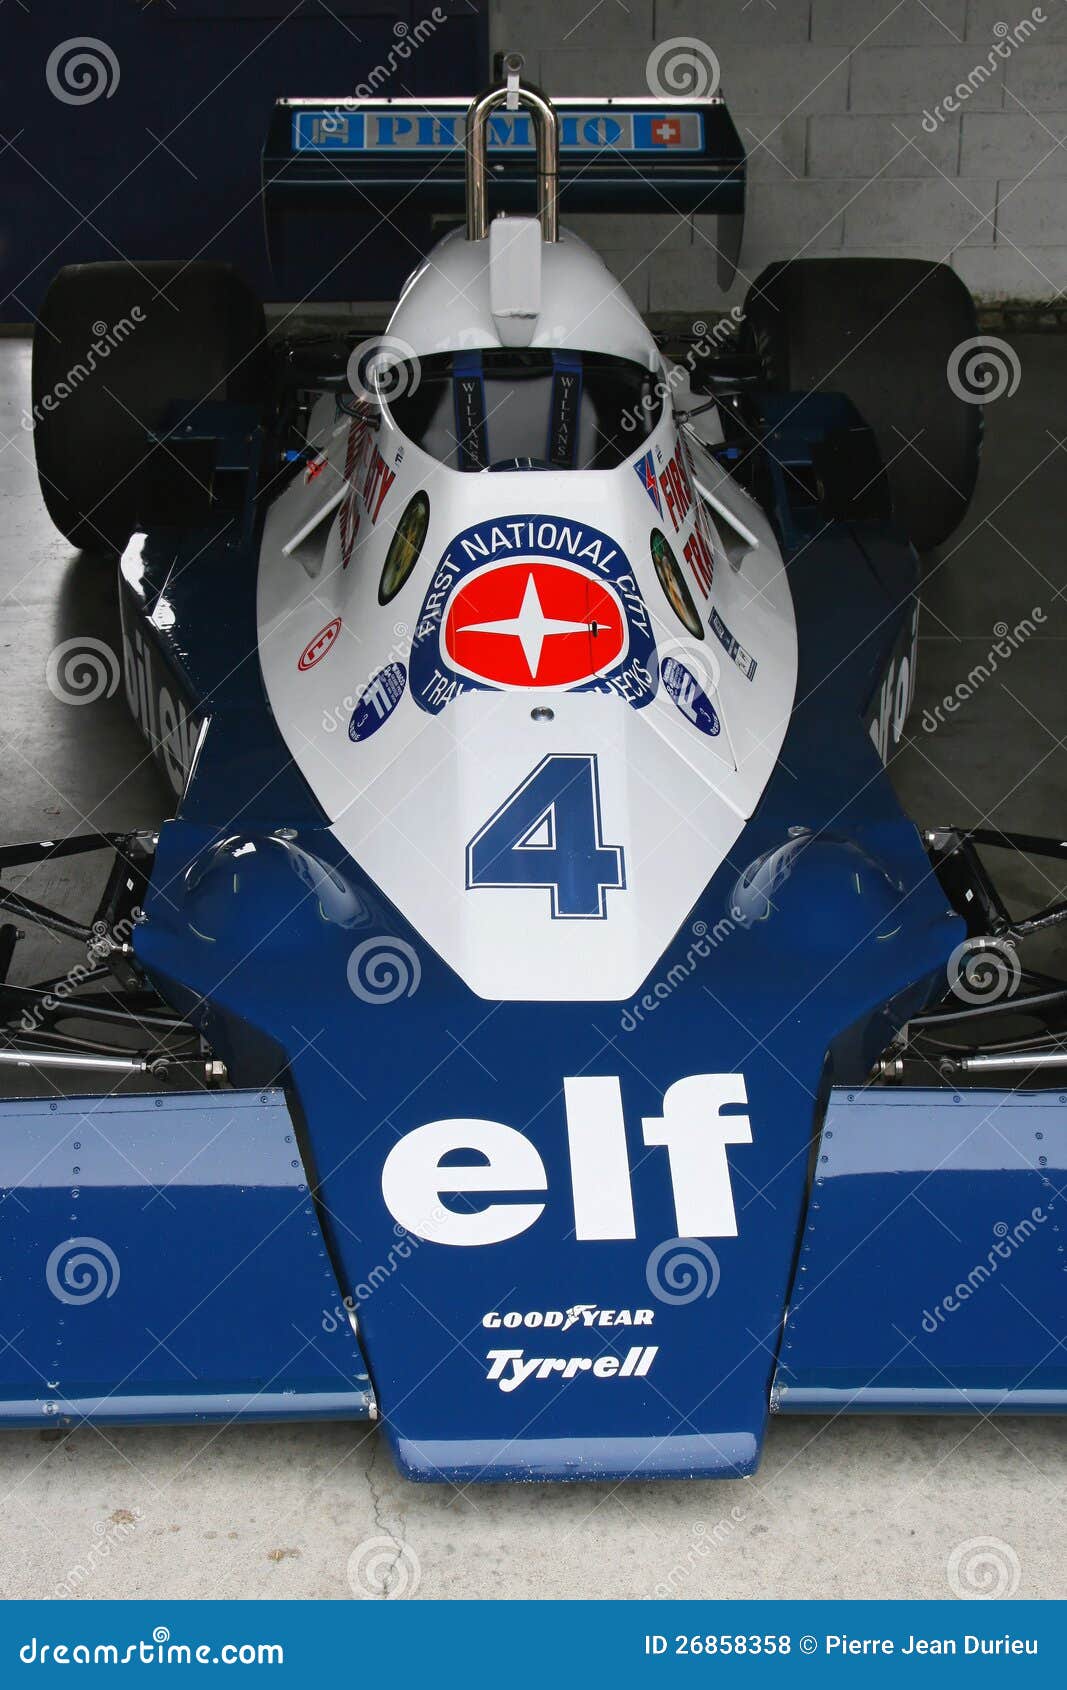 Coche de competición del Fórmula 1 de Tyrrell. Coche de competición de la fórmula 1 de Tyrrell durante Prix magnífico histórico el 24 de junio de 2012 en Dijon, Francia. Esta raza celebra el 40.o aniversario del circuito Dijon-Prenois